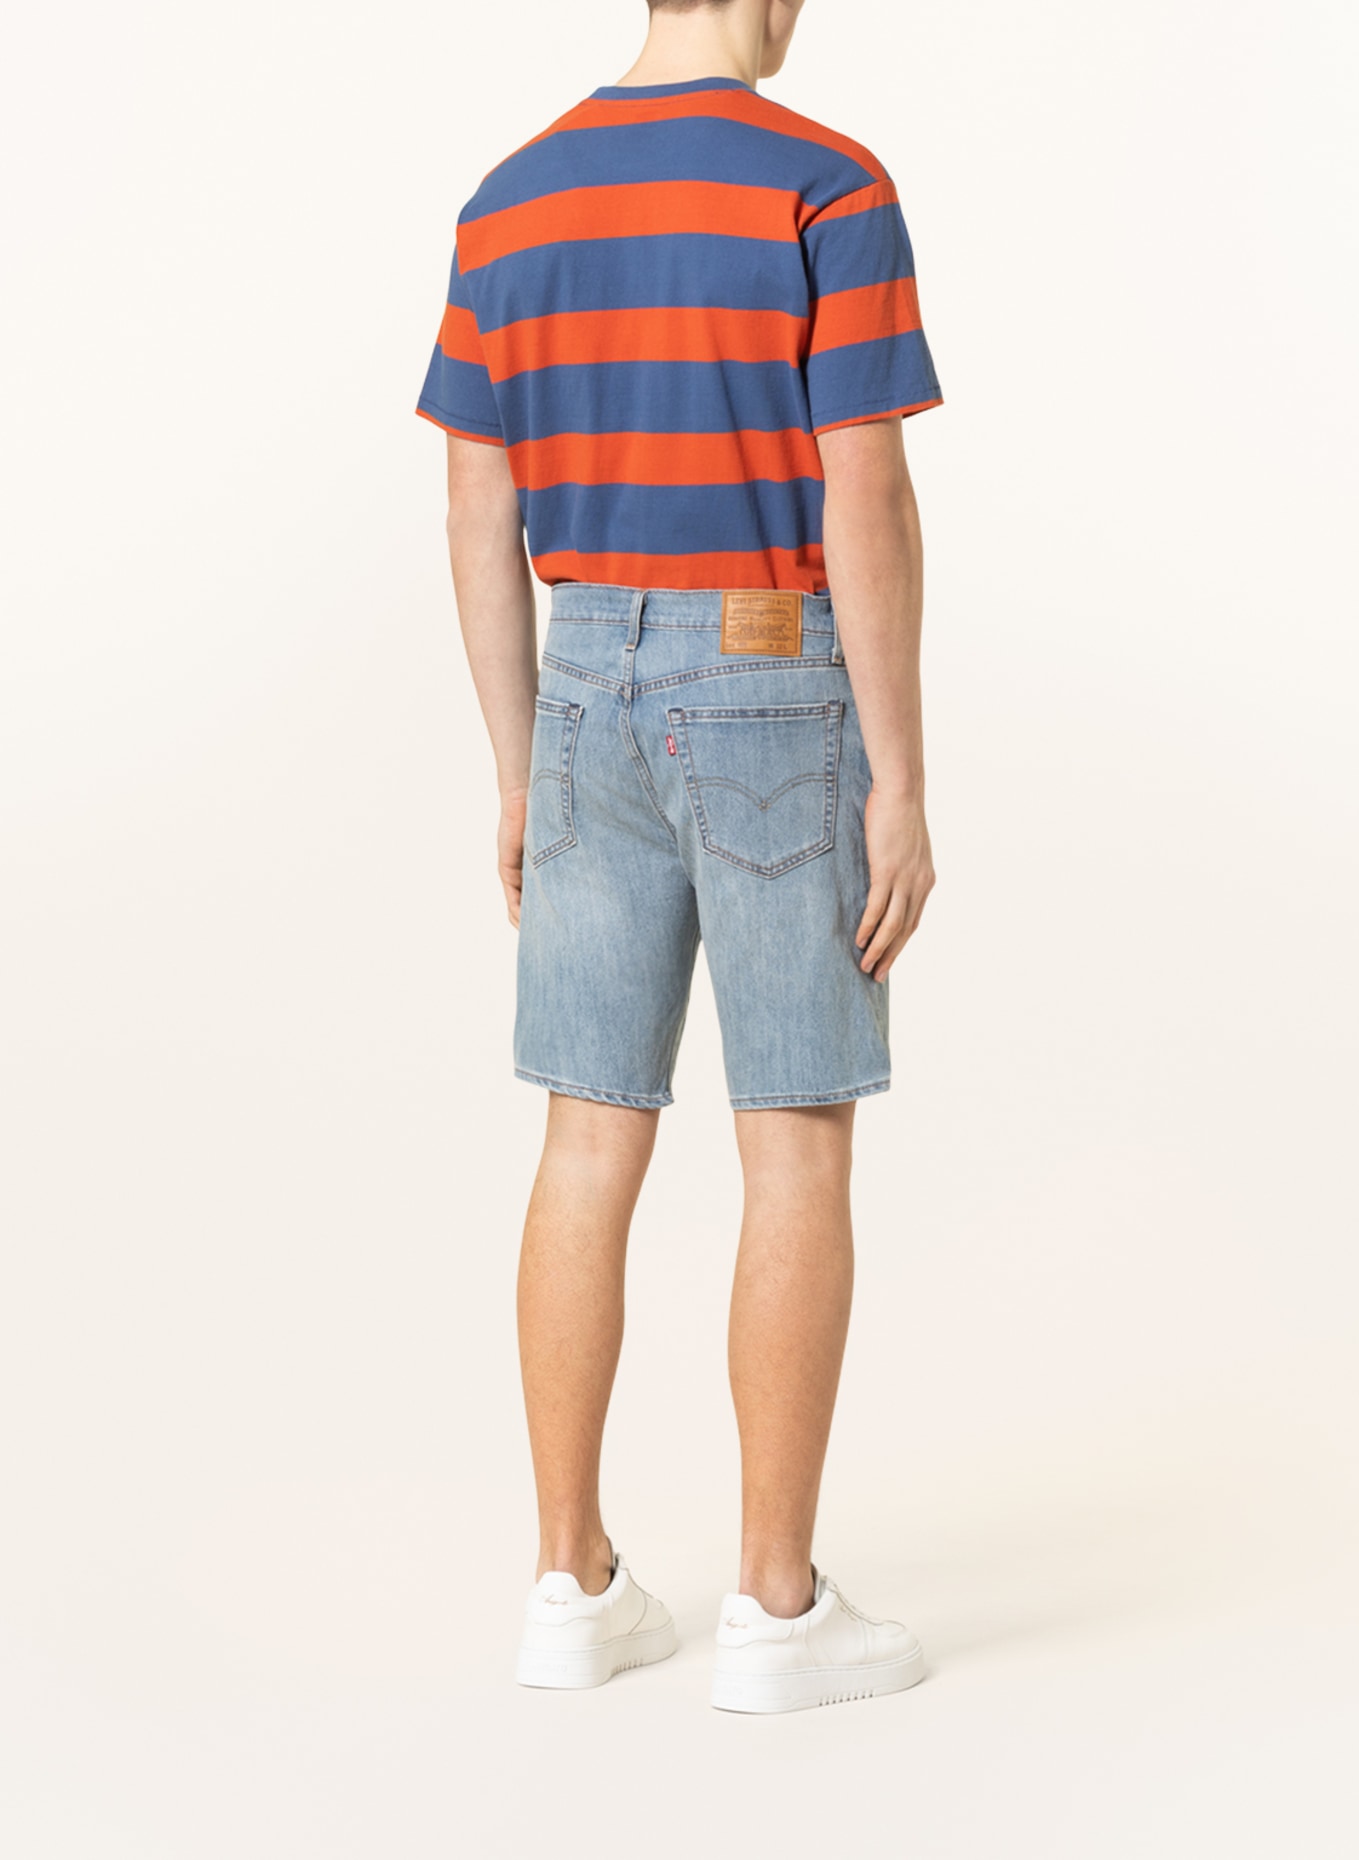 Levi's® Jeans shorts 405 standard fit, Color: 02 Med Indigo - Worn In (Image 3)